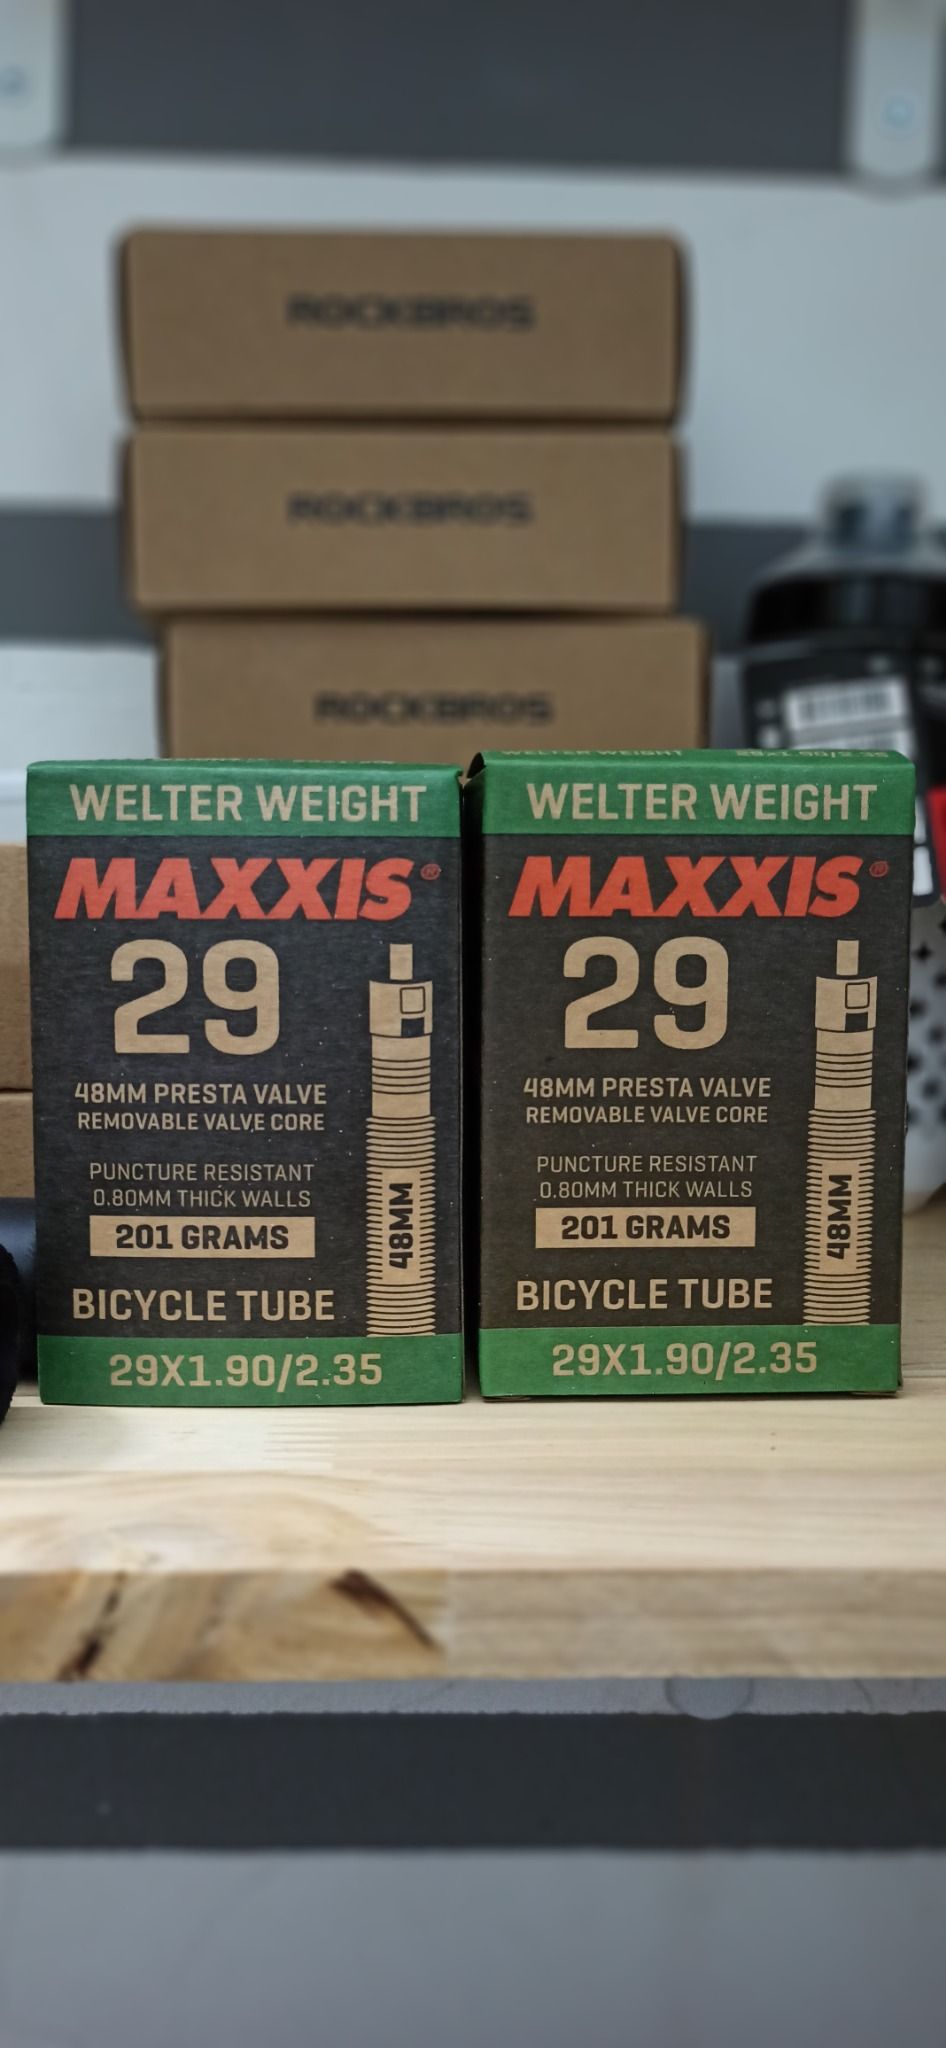  Săm xe đạp Maxxis 29